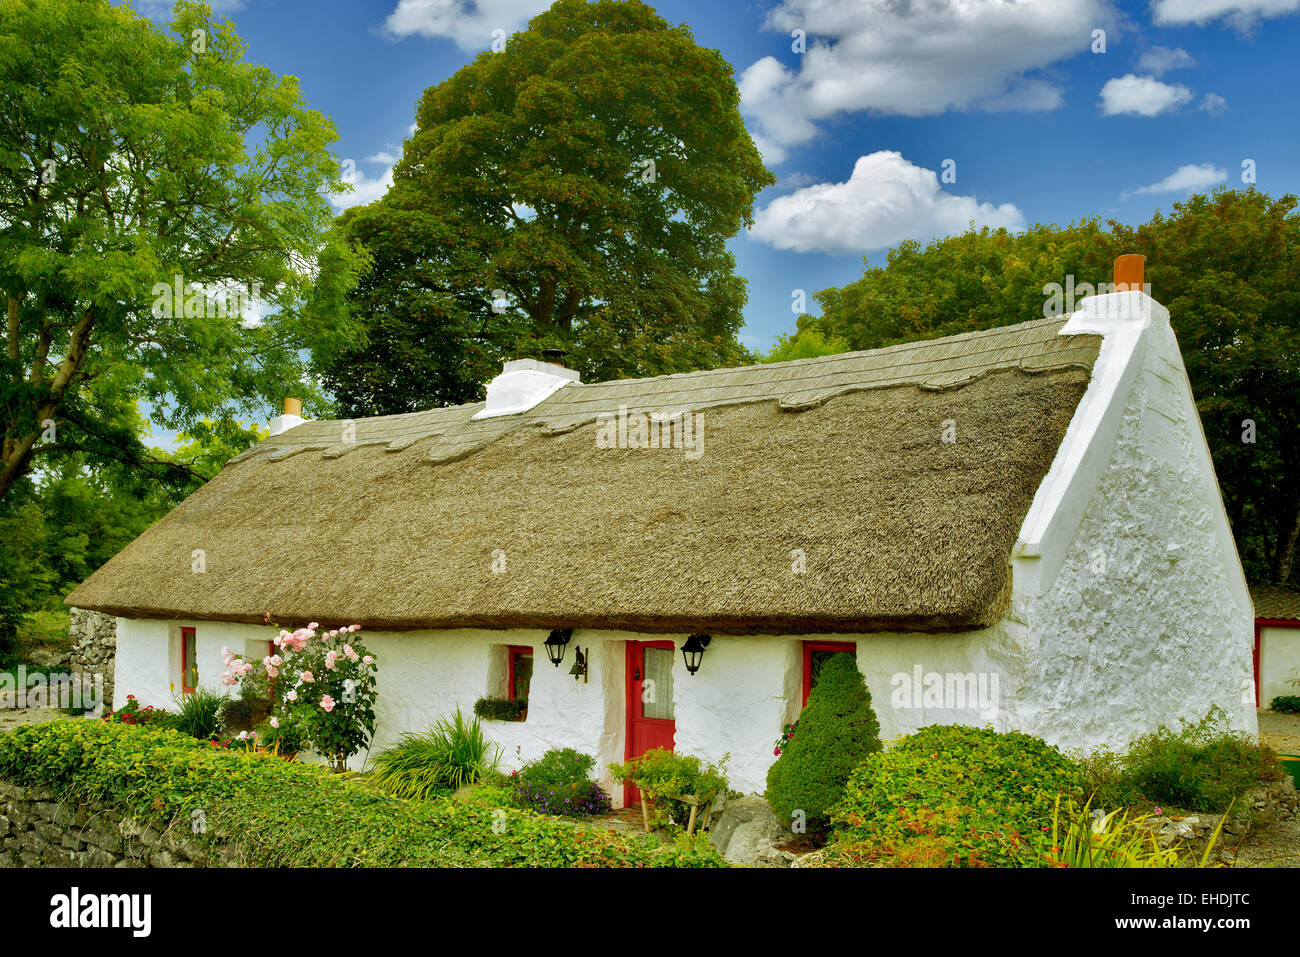 Irish cottage au toit de chaume. Oughterard, Irlande Banque D'Images